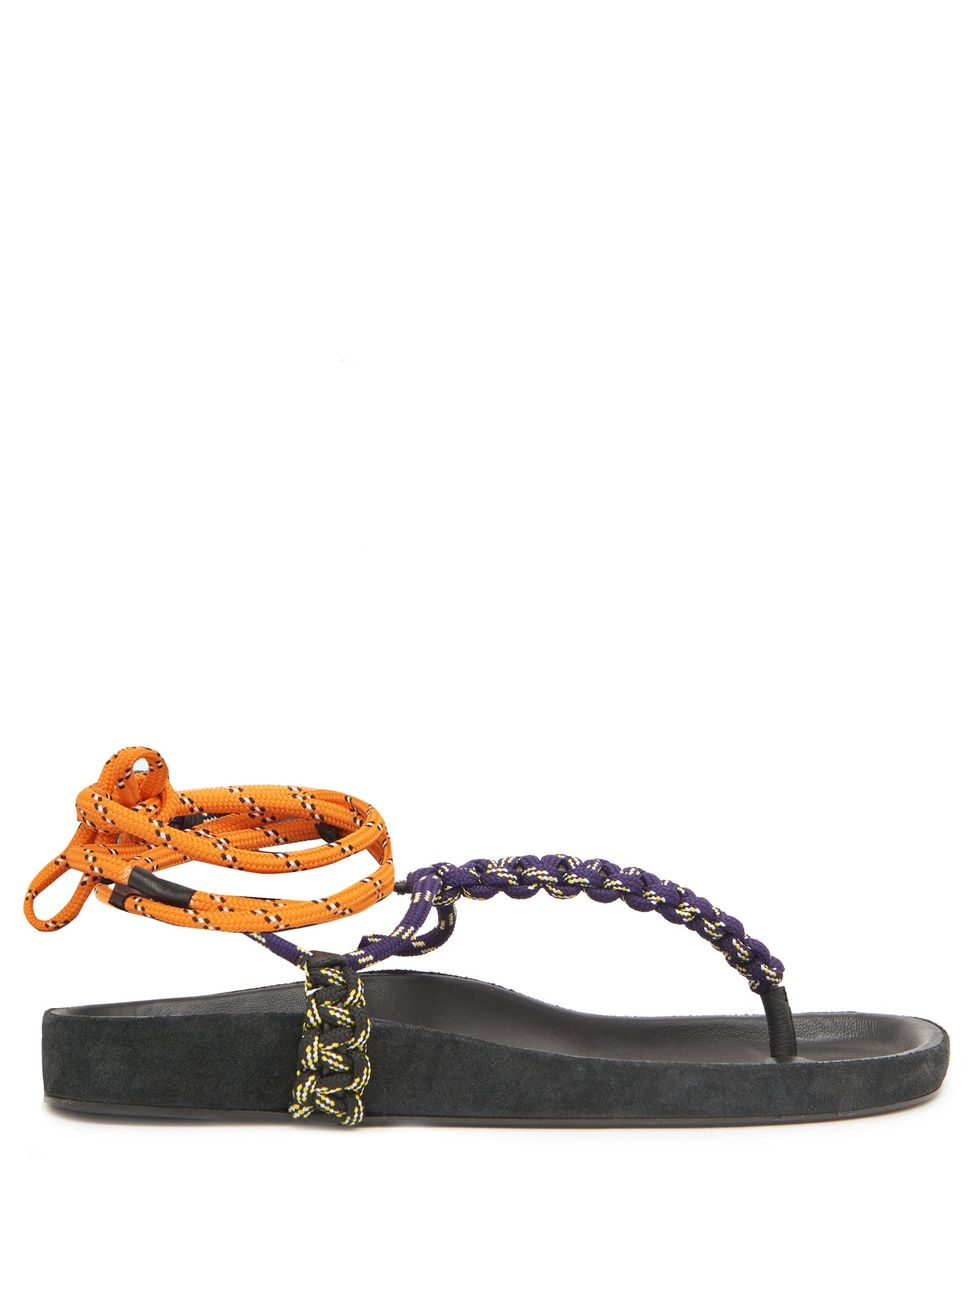 Loreco rope sandals